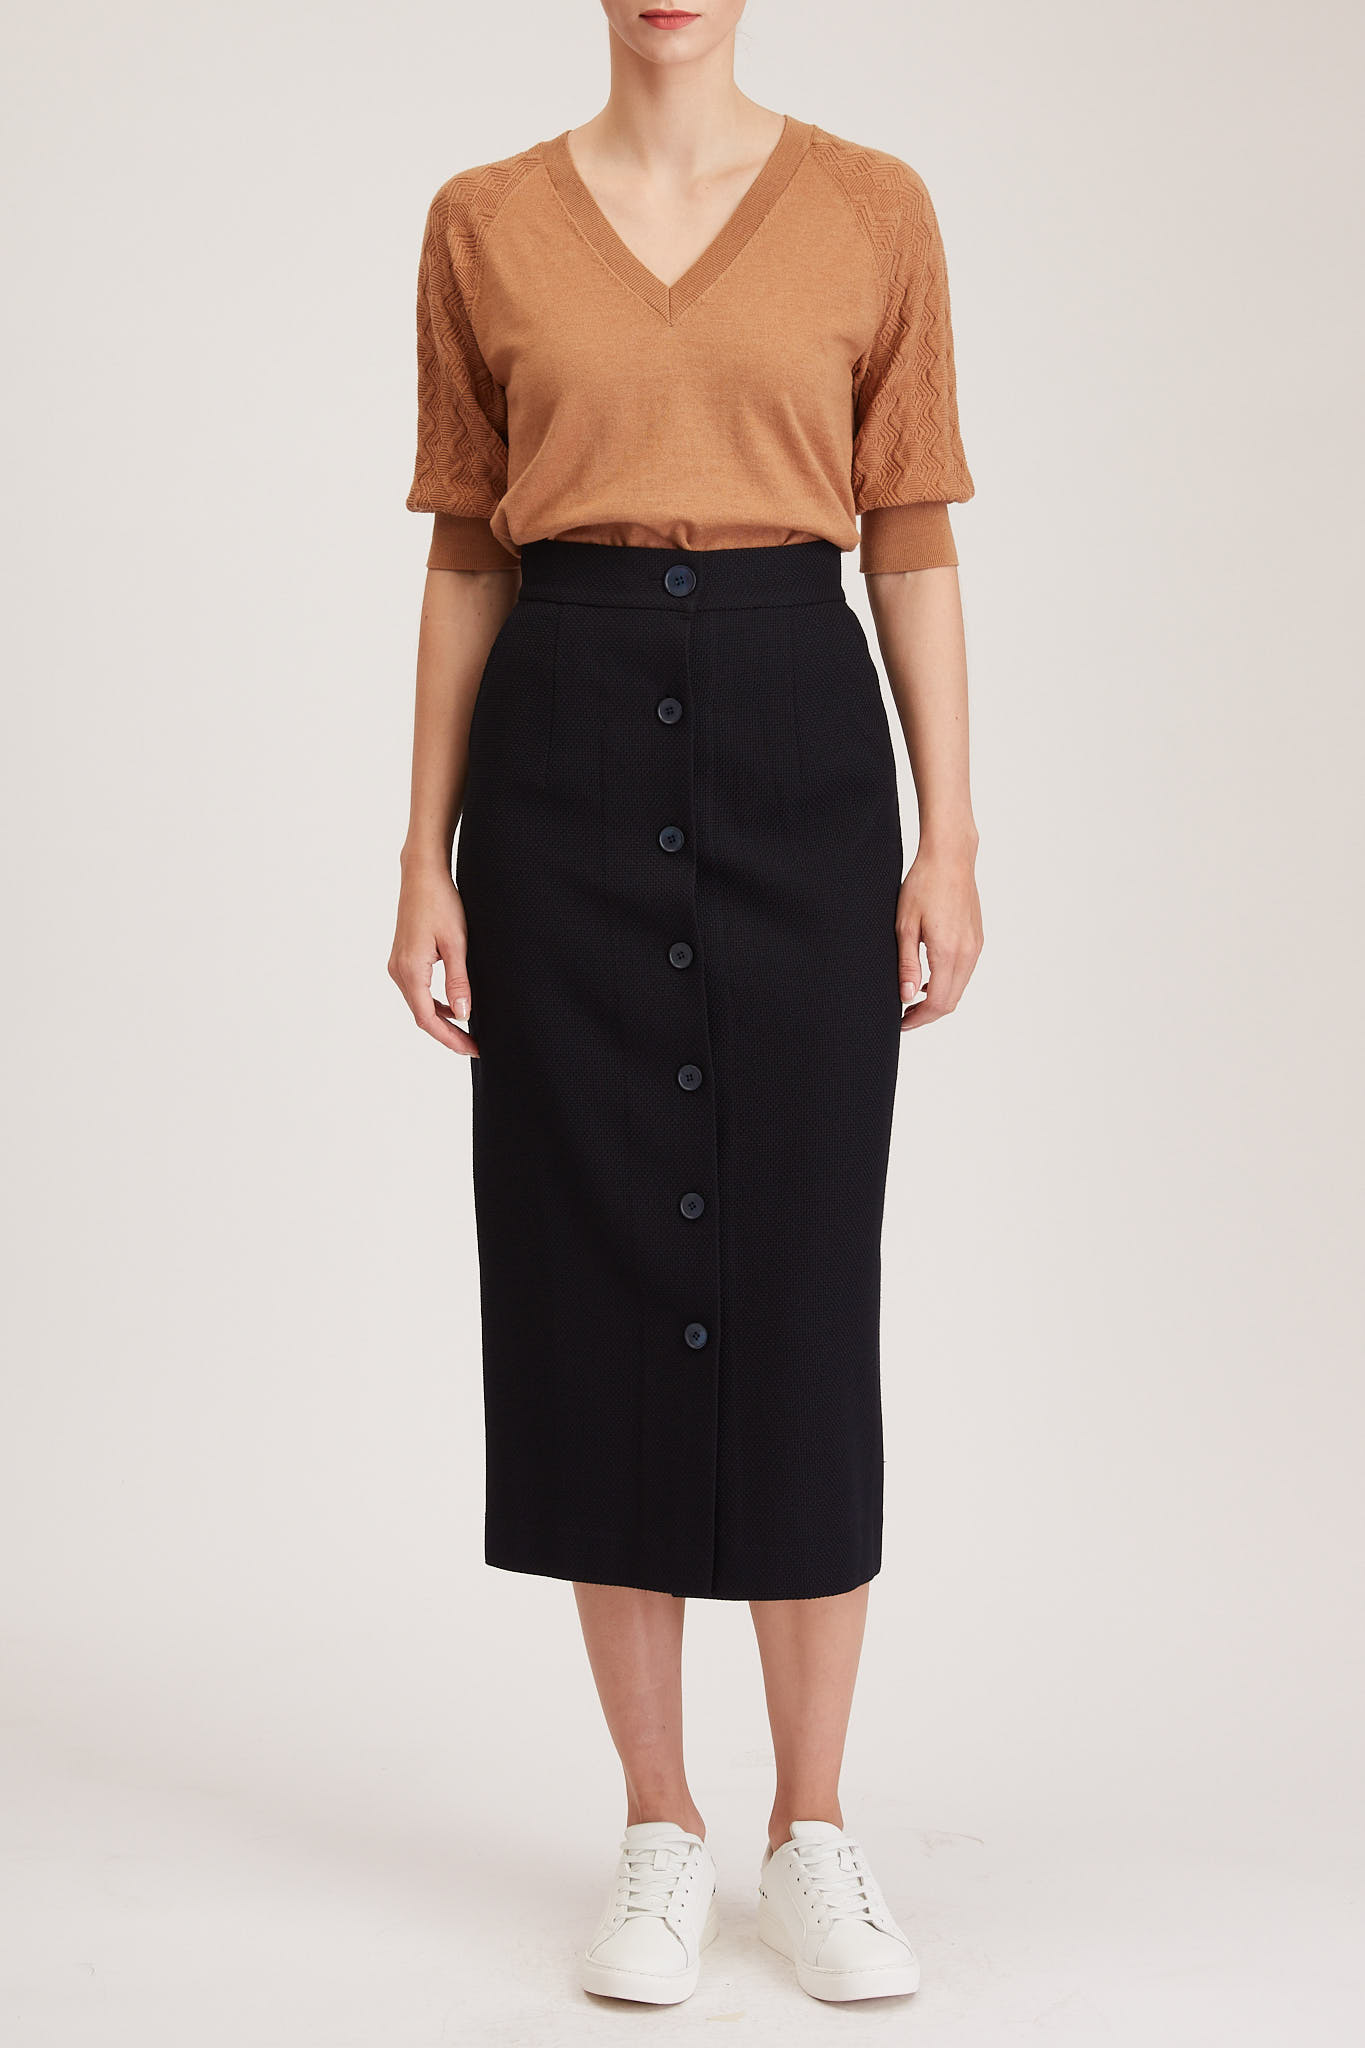 Richmond Skirt – Maxi skirt in navy wool blend